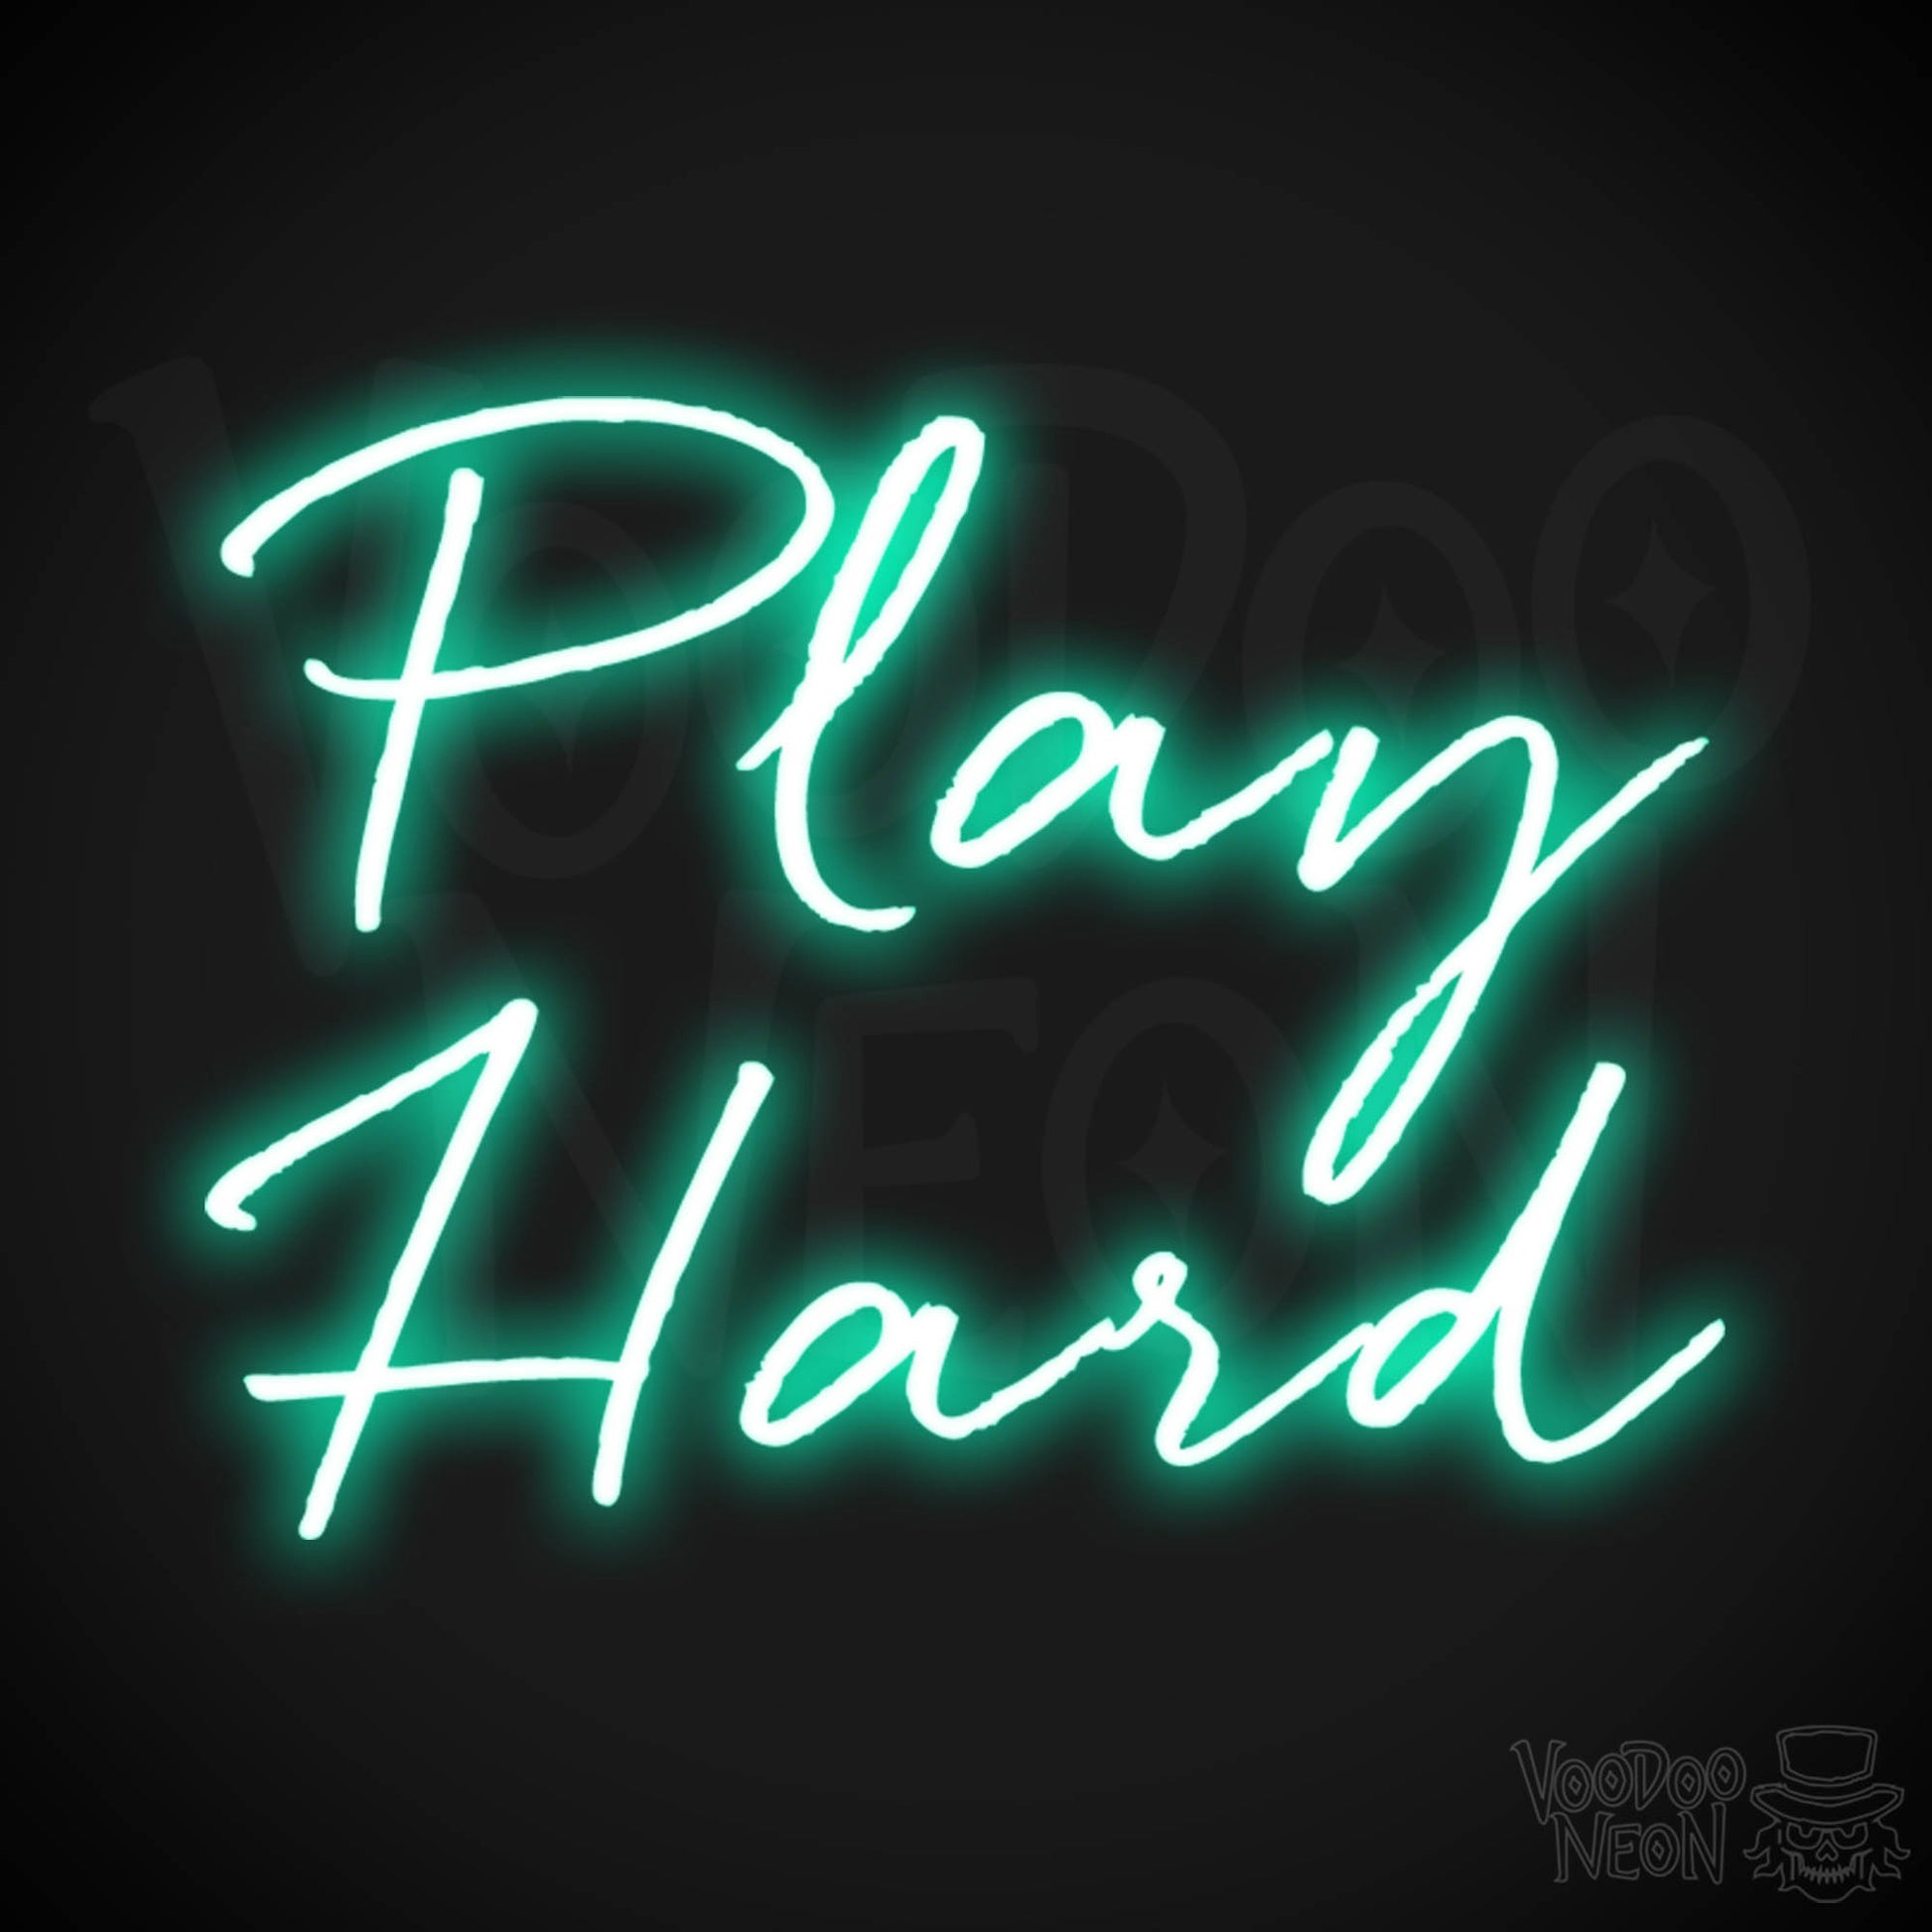 Play Hard Neon Sign - Neon Play Hard Sign - Play Hard LED Sign - Color Light Green